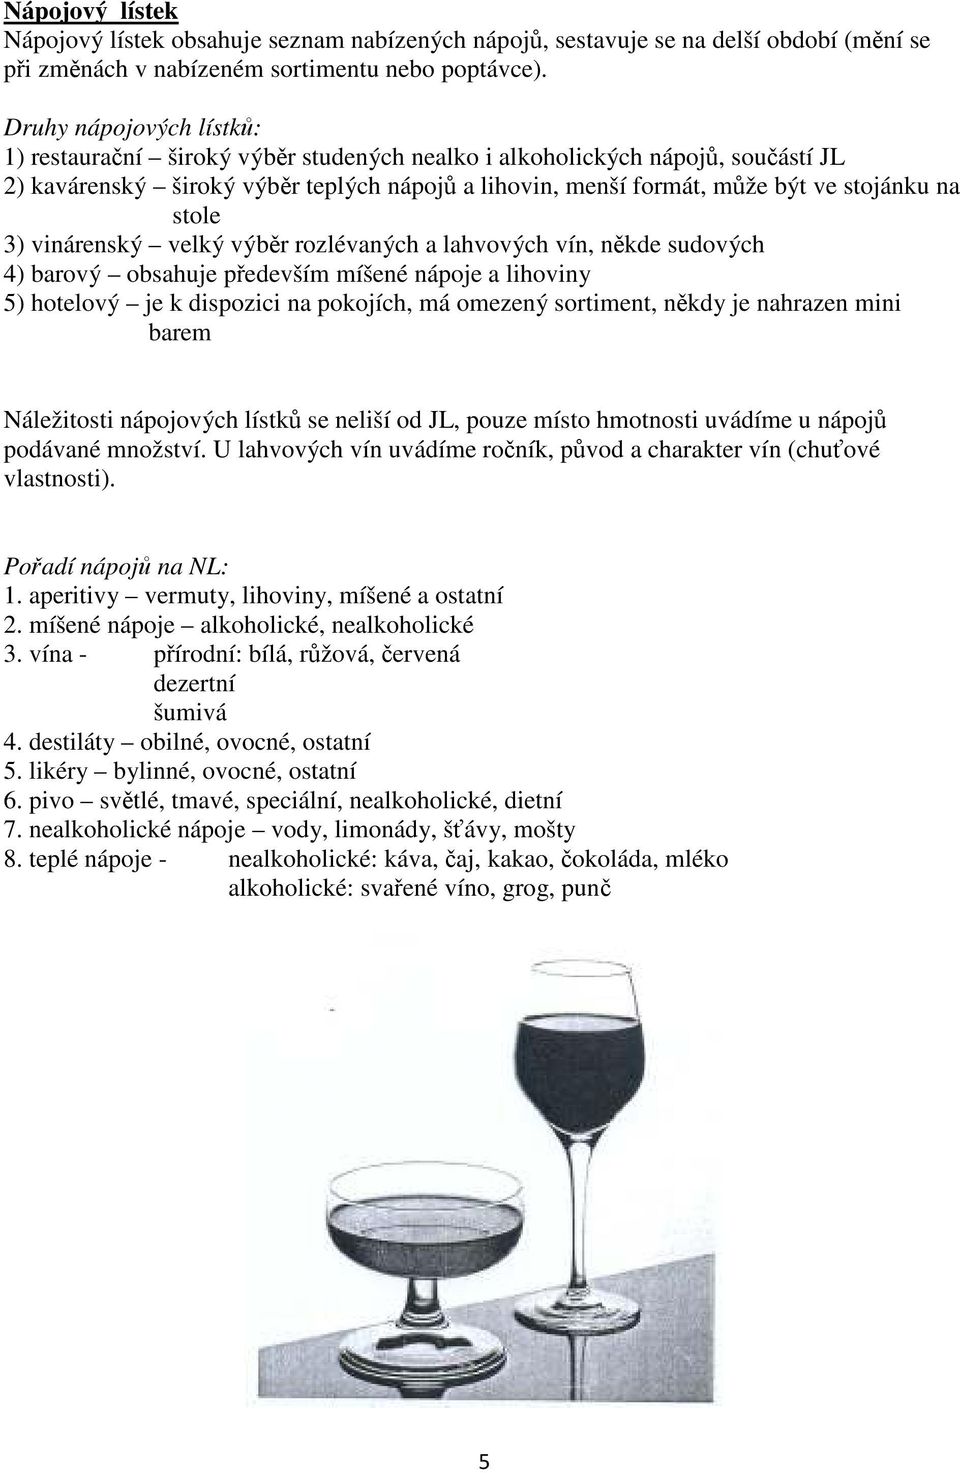 stole 3) vinárenský velký výběr rozlévaných a lahvových vín, někde sudových 4) barový obsahuje především míšené nápoje a lihoviny 5) hotelový je k dispozici na pokojích, má omezený sortiment, někdy